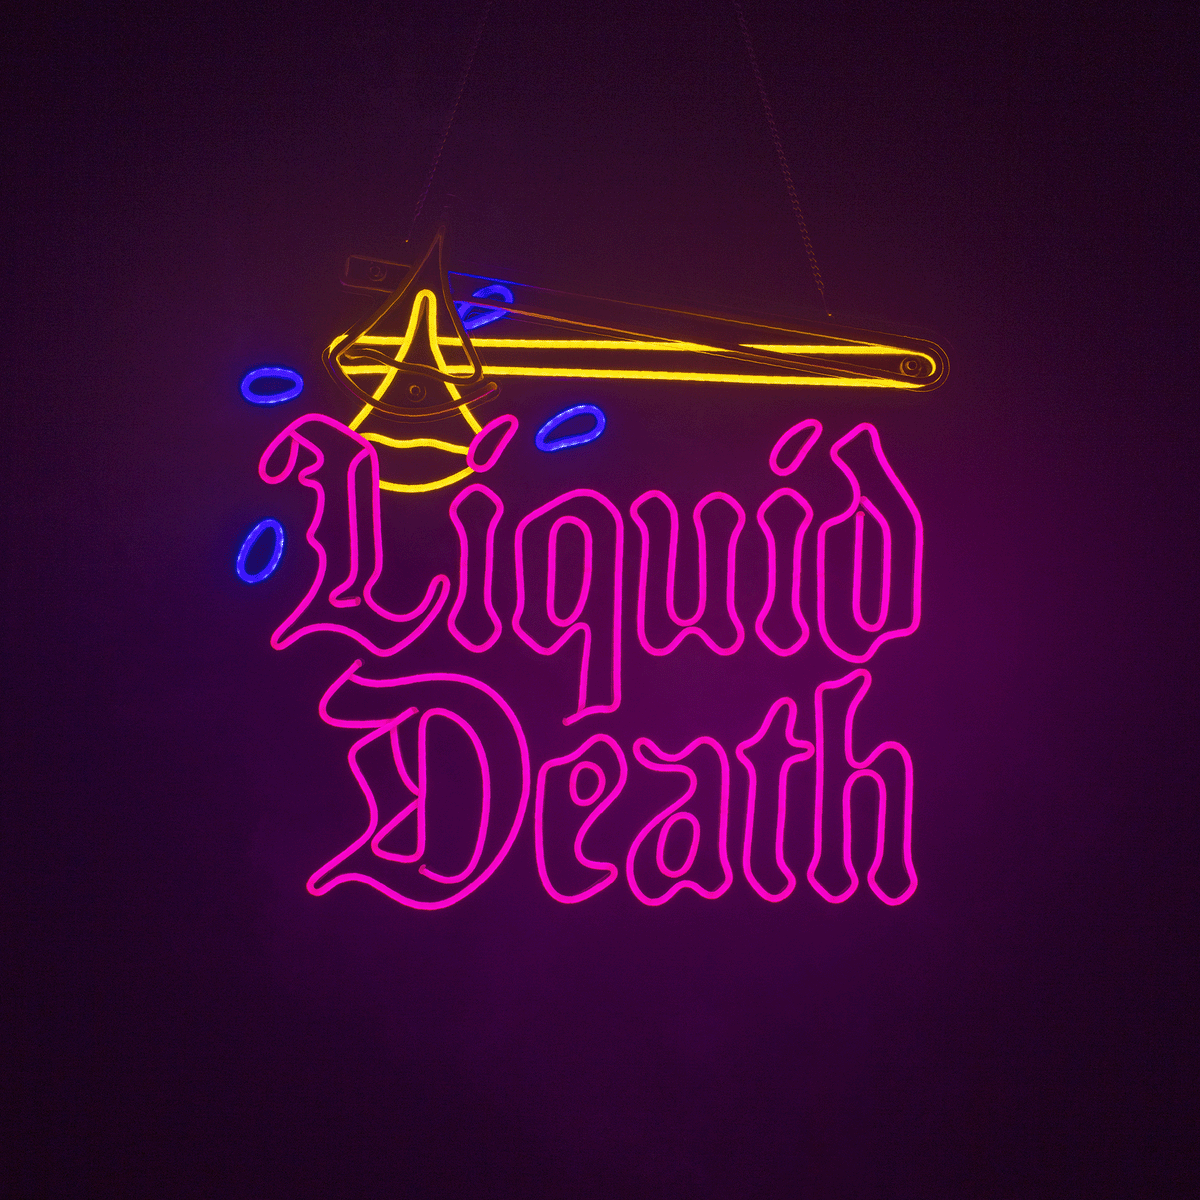 Drip Club LED Neon Sign – Liquid Death